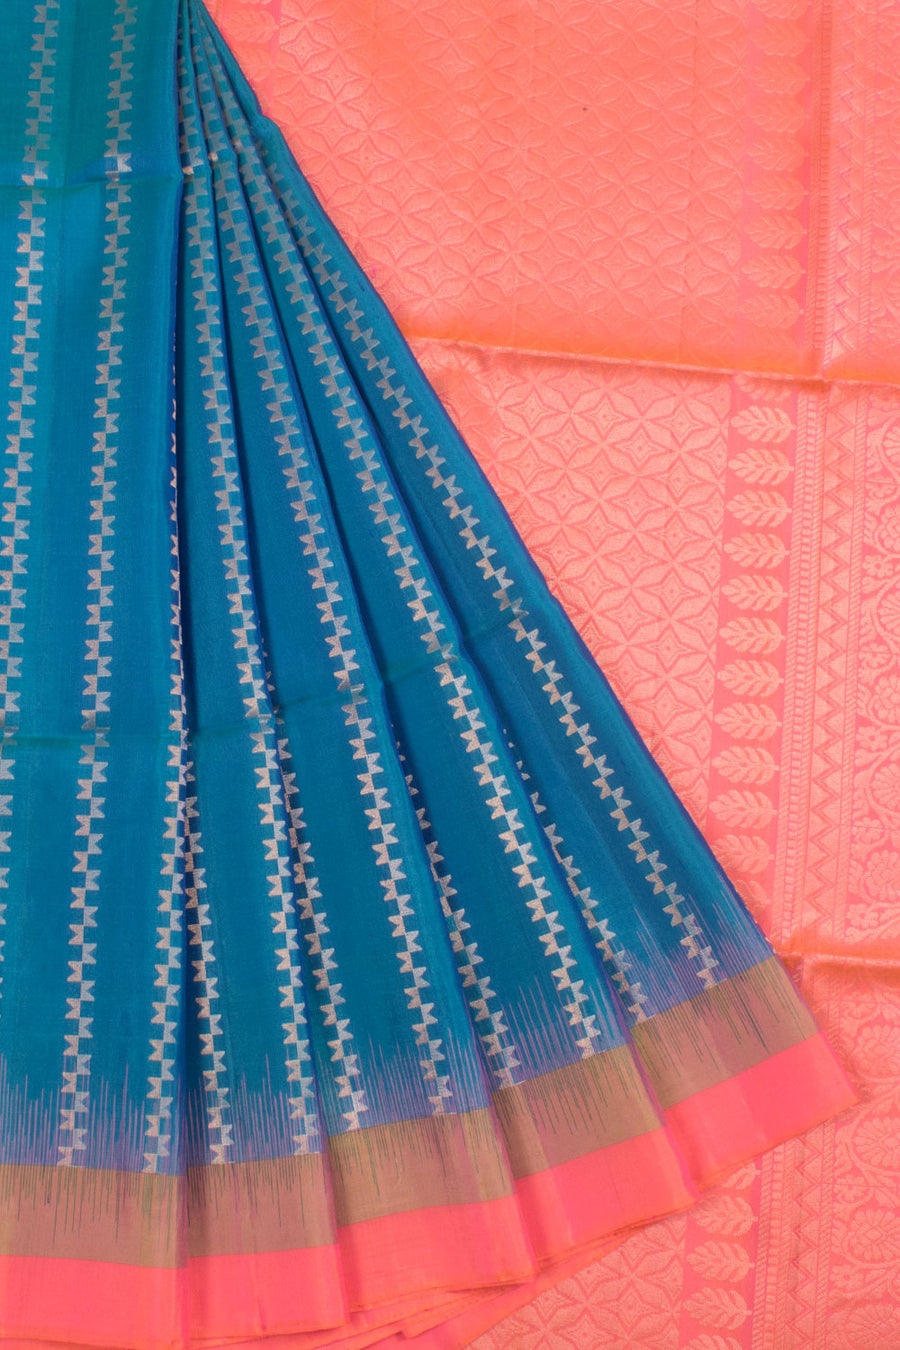 Handloom Kanjivaram Soft Silk Saree with Thoranam Design and Geometric Pallu